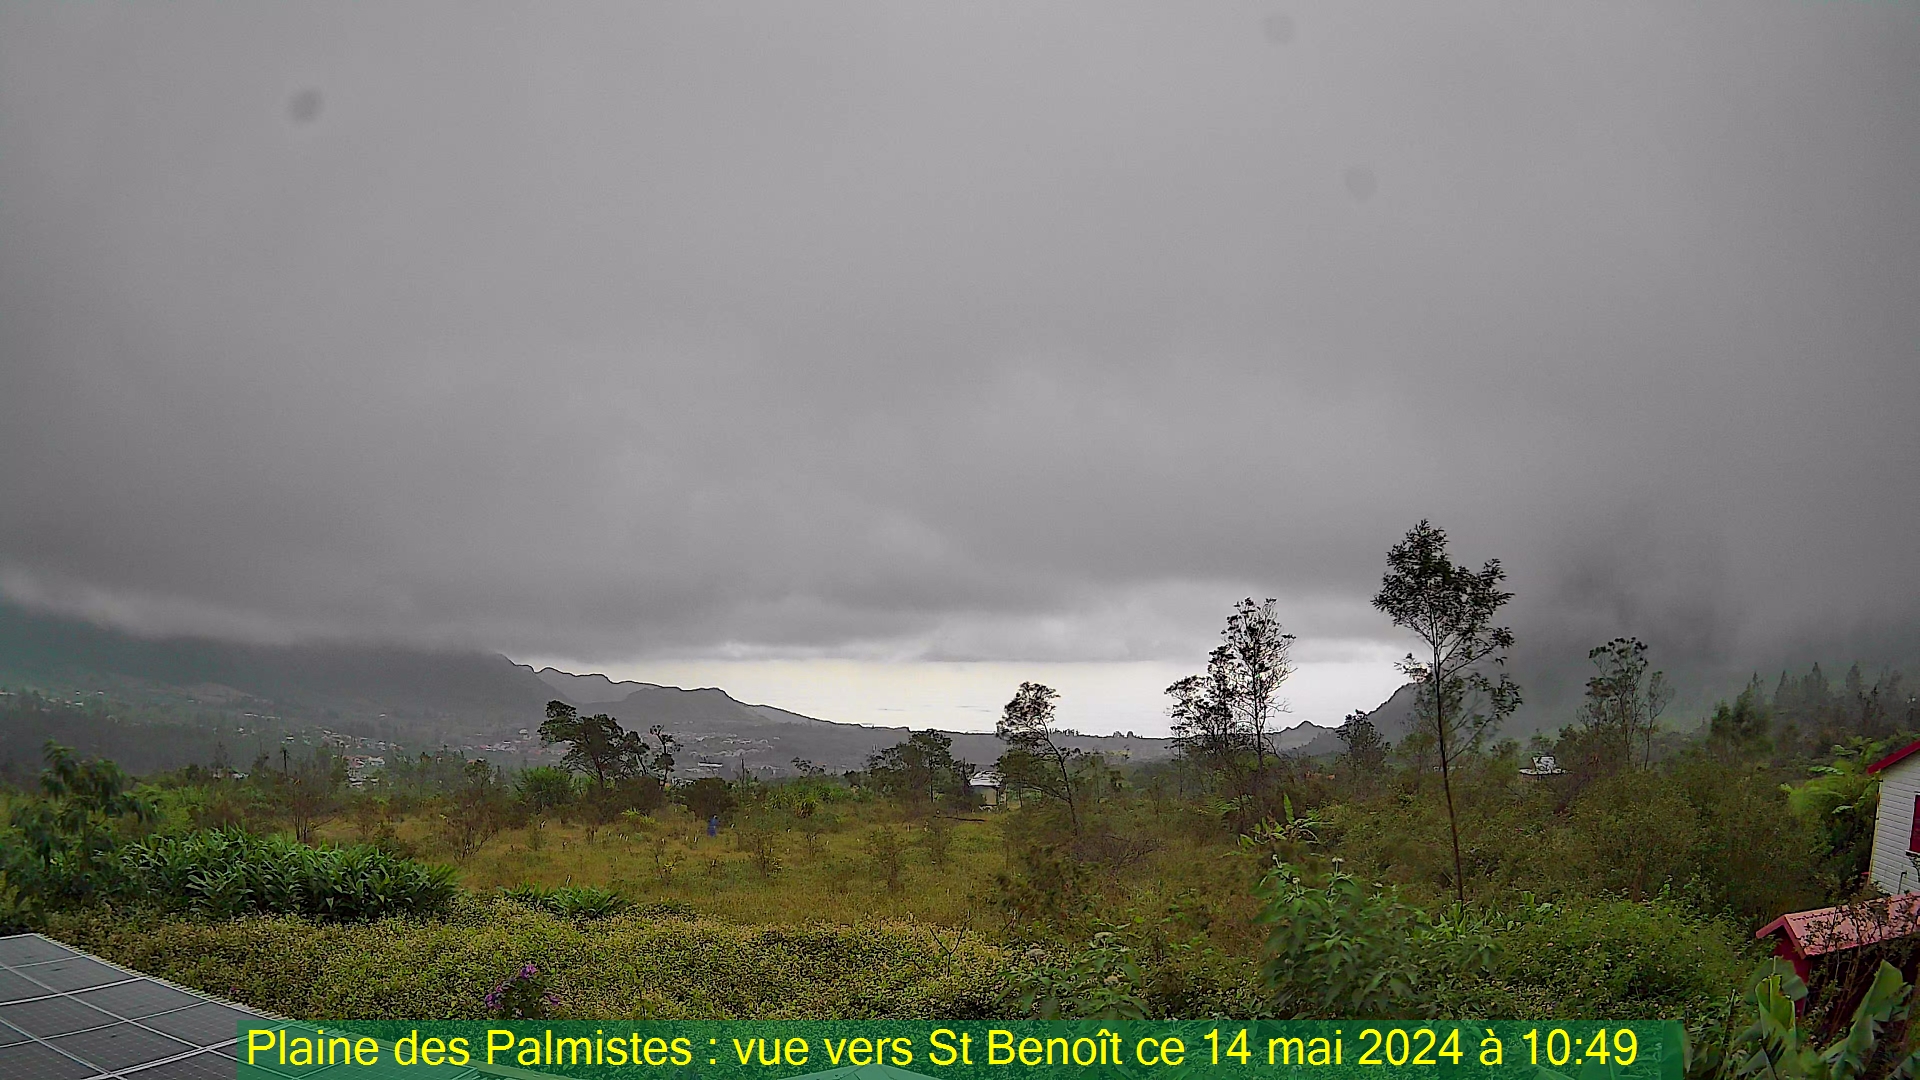 Saint-Denis (Réunion) Do. 10:50